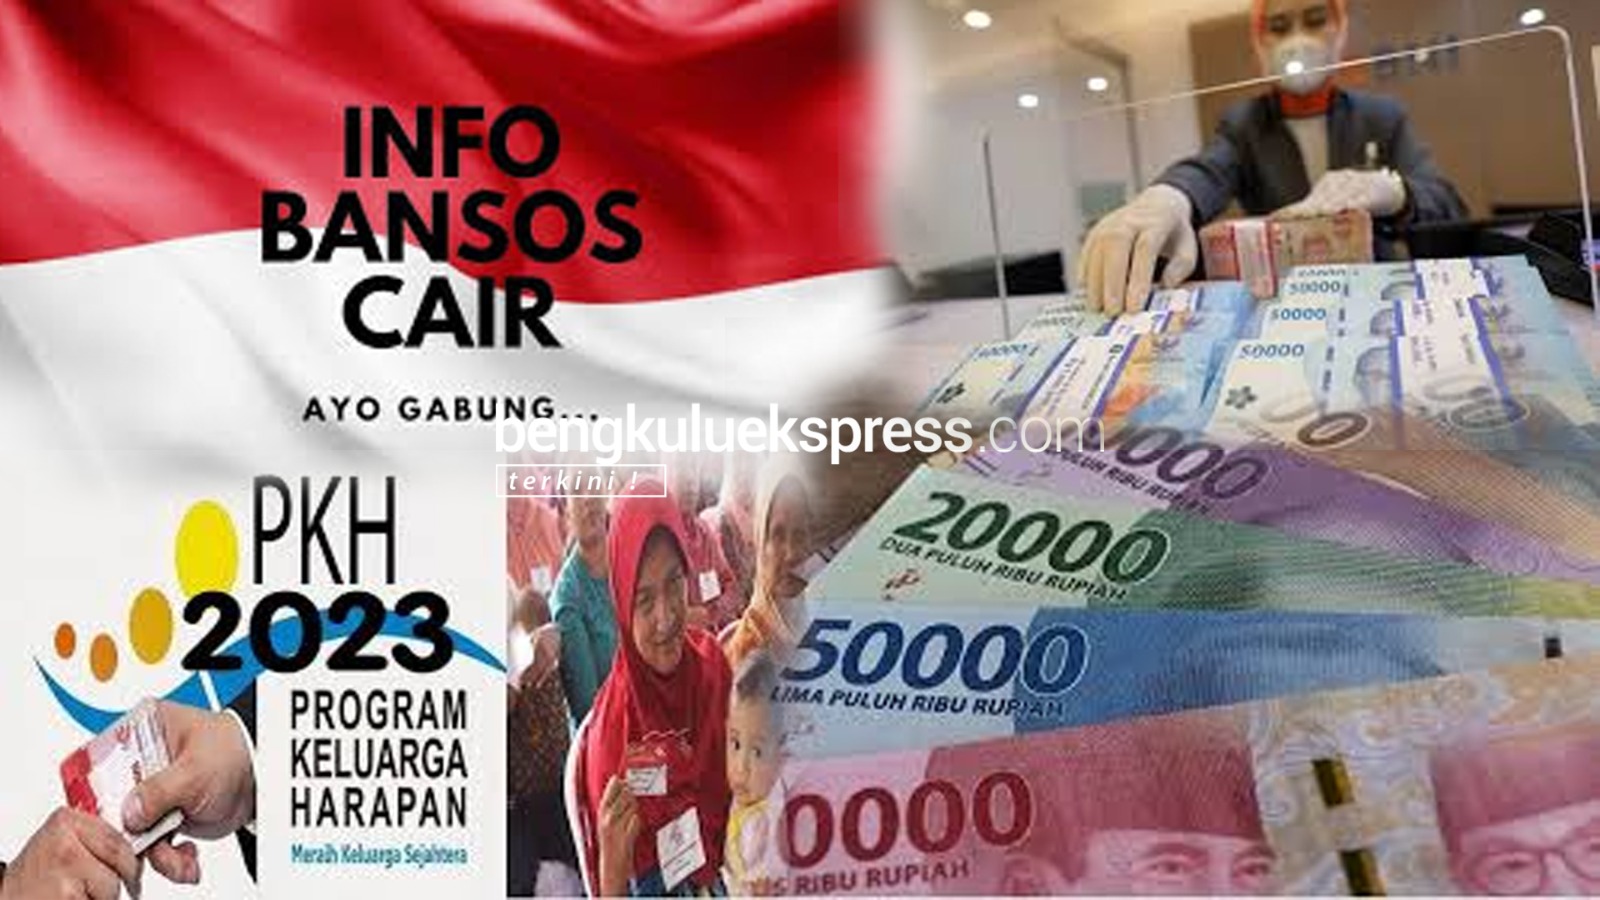 Bansos PKH Tahap 2 Cair, Langsung Ambil di Bank atau Kantor Pos